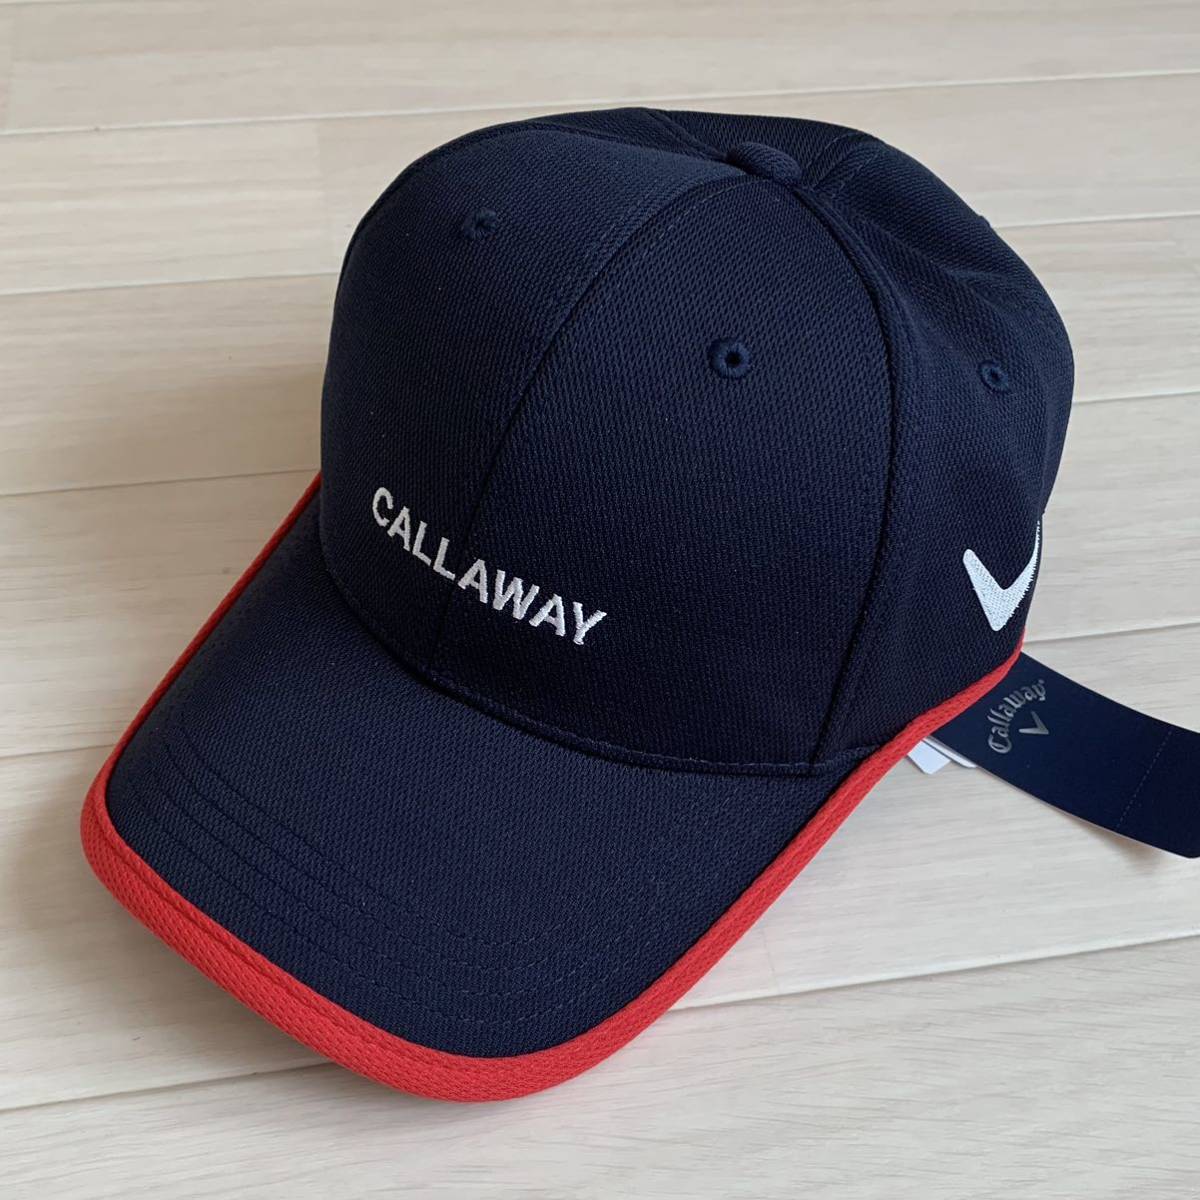  новый товар #5,720 иен [ Callaway Golf ] женский маска есть колпак шляпа темно-синий Golf одежда 